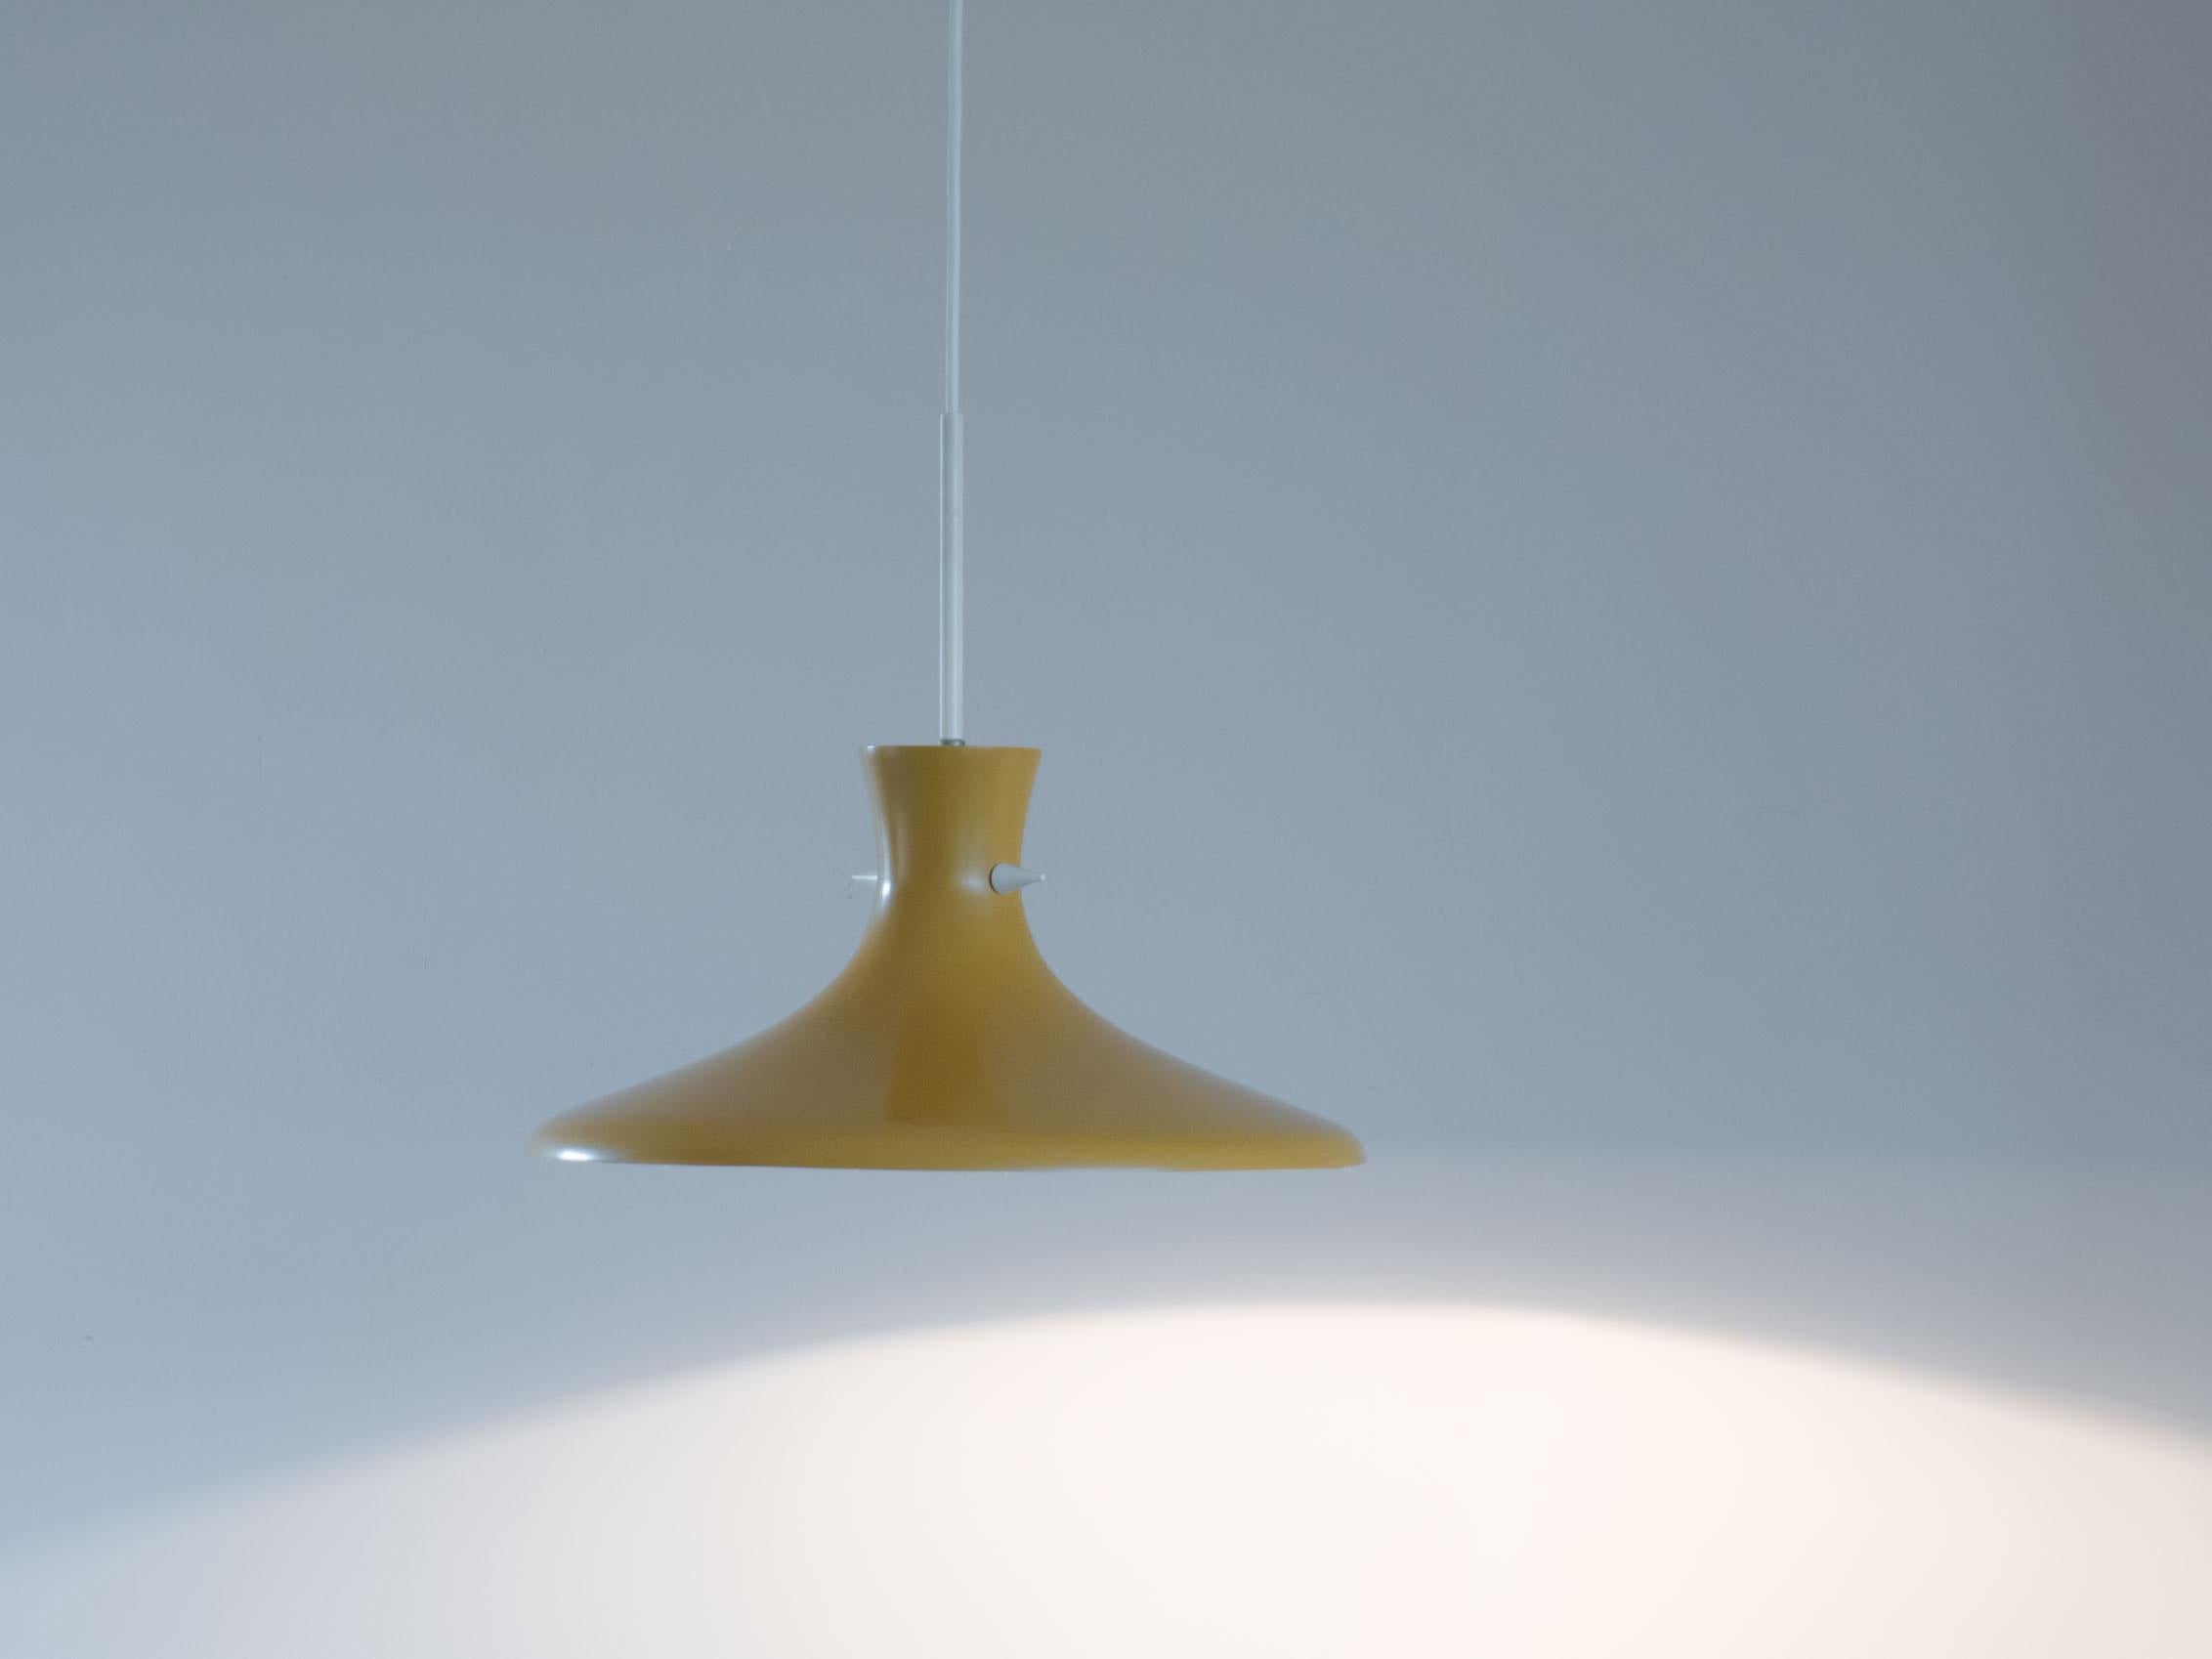 Organisch geformte, ockergelbe Vintage-Hängelampe.

Diese Lampe ist sehr minimalistisch gestaltet, der Schirm hat zwei kleine weiße Spitzen, die die Form des Schirms betonen.

Diese Lampe ist in sehr gutem Zustand. Der Schirm hat altersgemäße